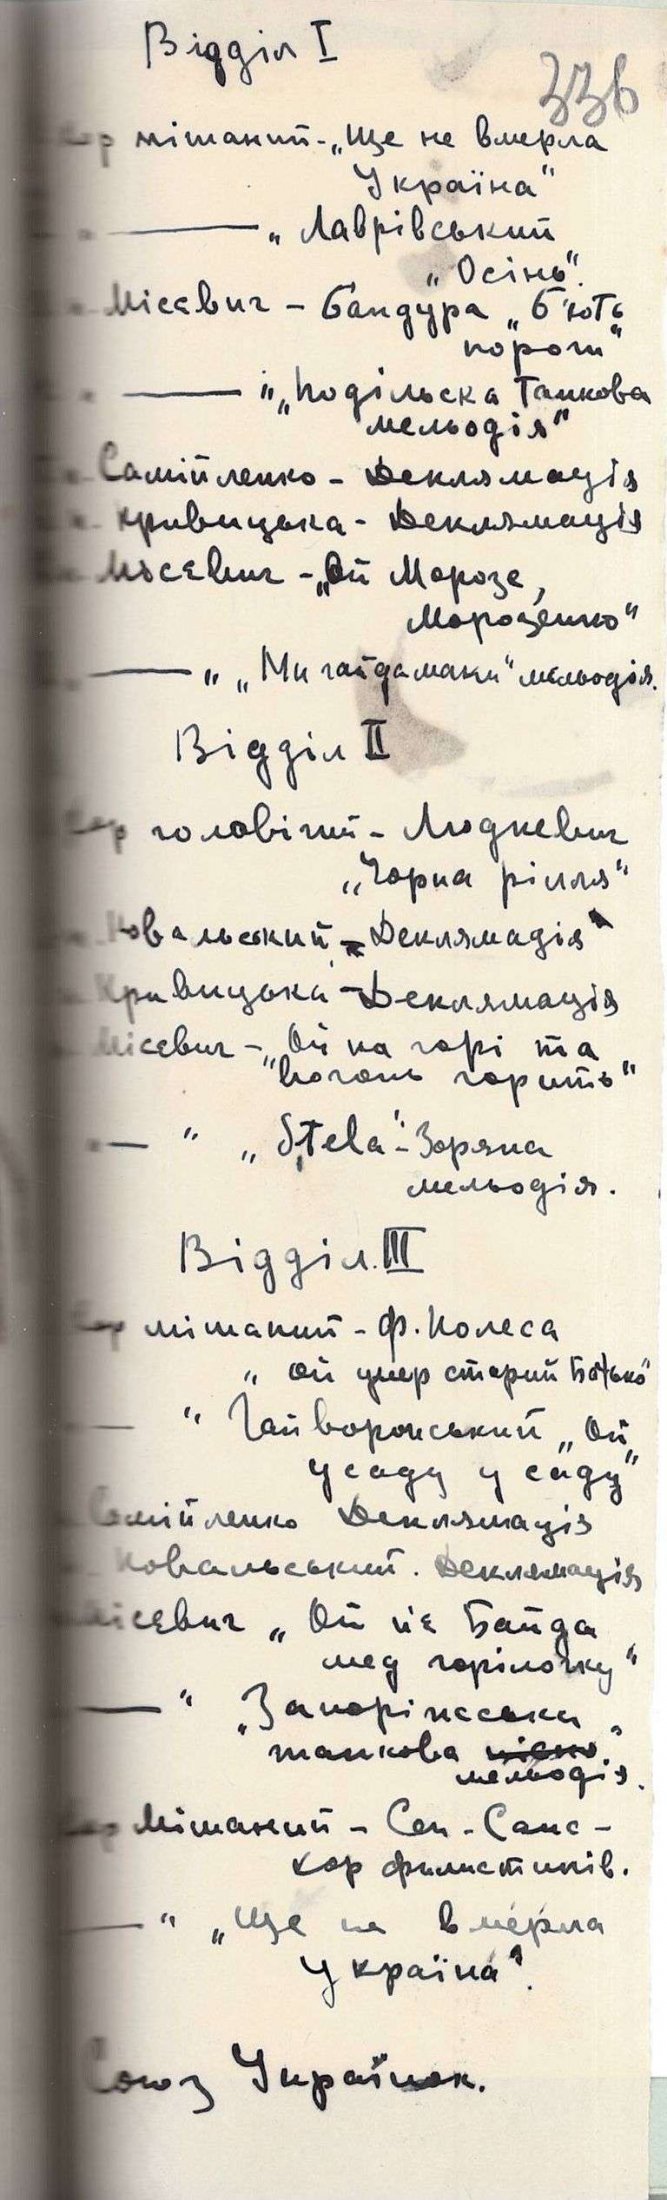 Програма концерту, влаштованого Союзом Українок, на якому змішаний хор виконував твори Філарета Колесси, Костя Місевича, Михайла Гайворонського. 2 липня 1921 р.